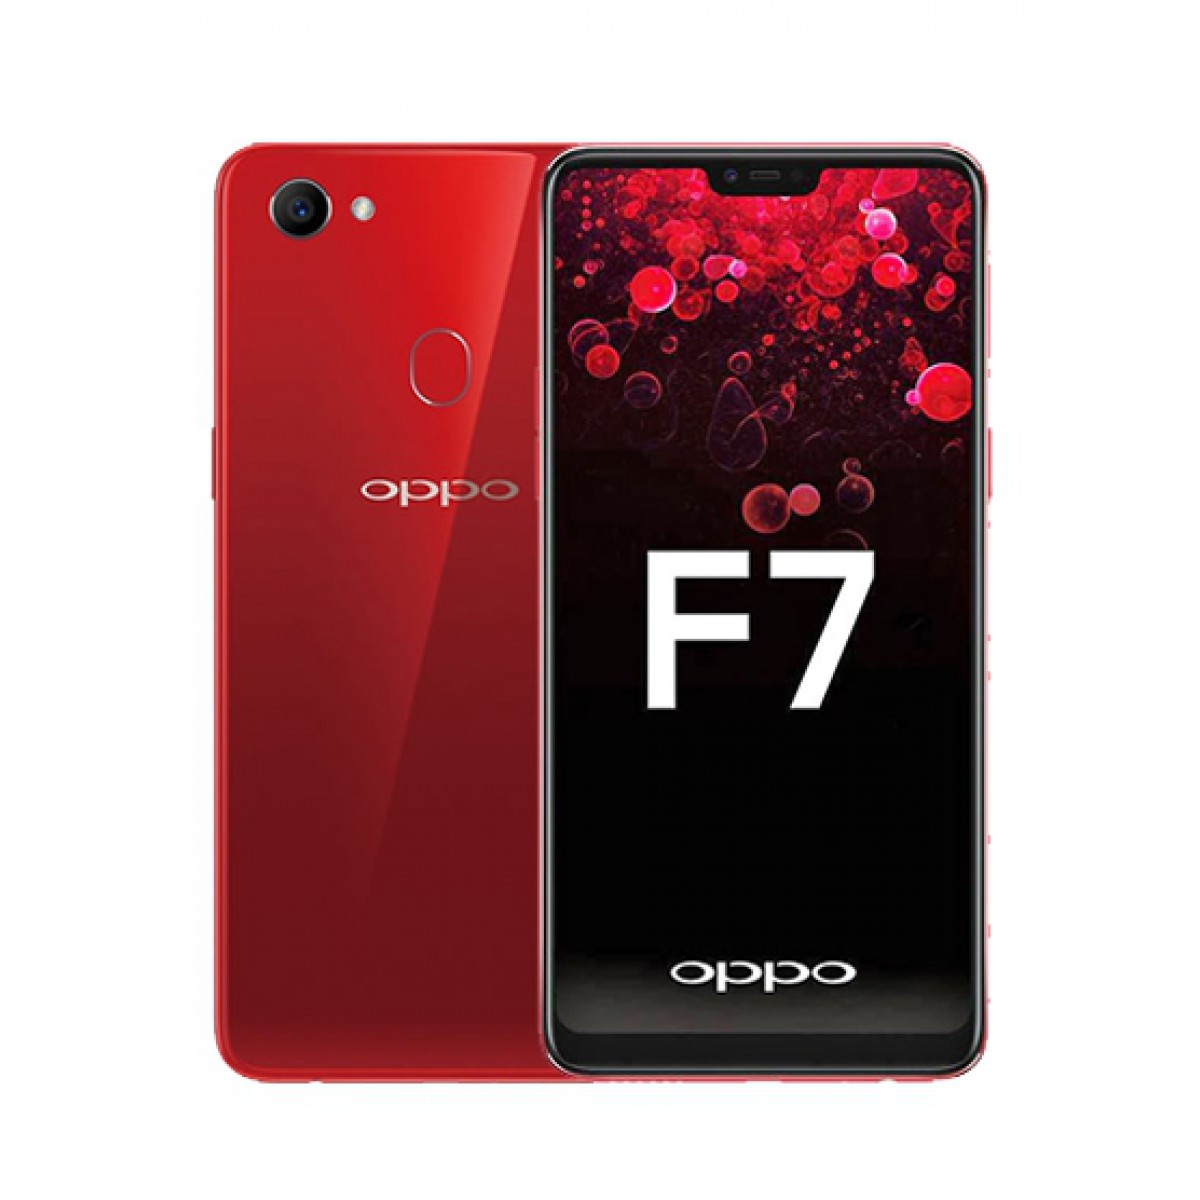 أسعار ومواصفات هواتف Oppo المتوفرة في السوق المصرية